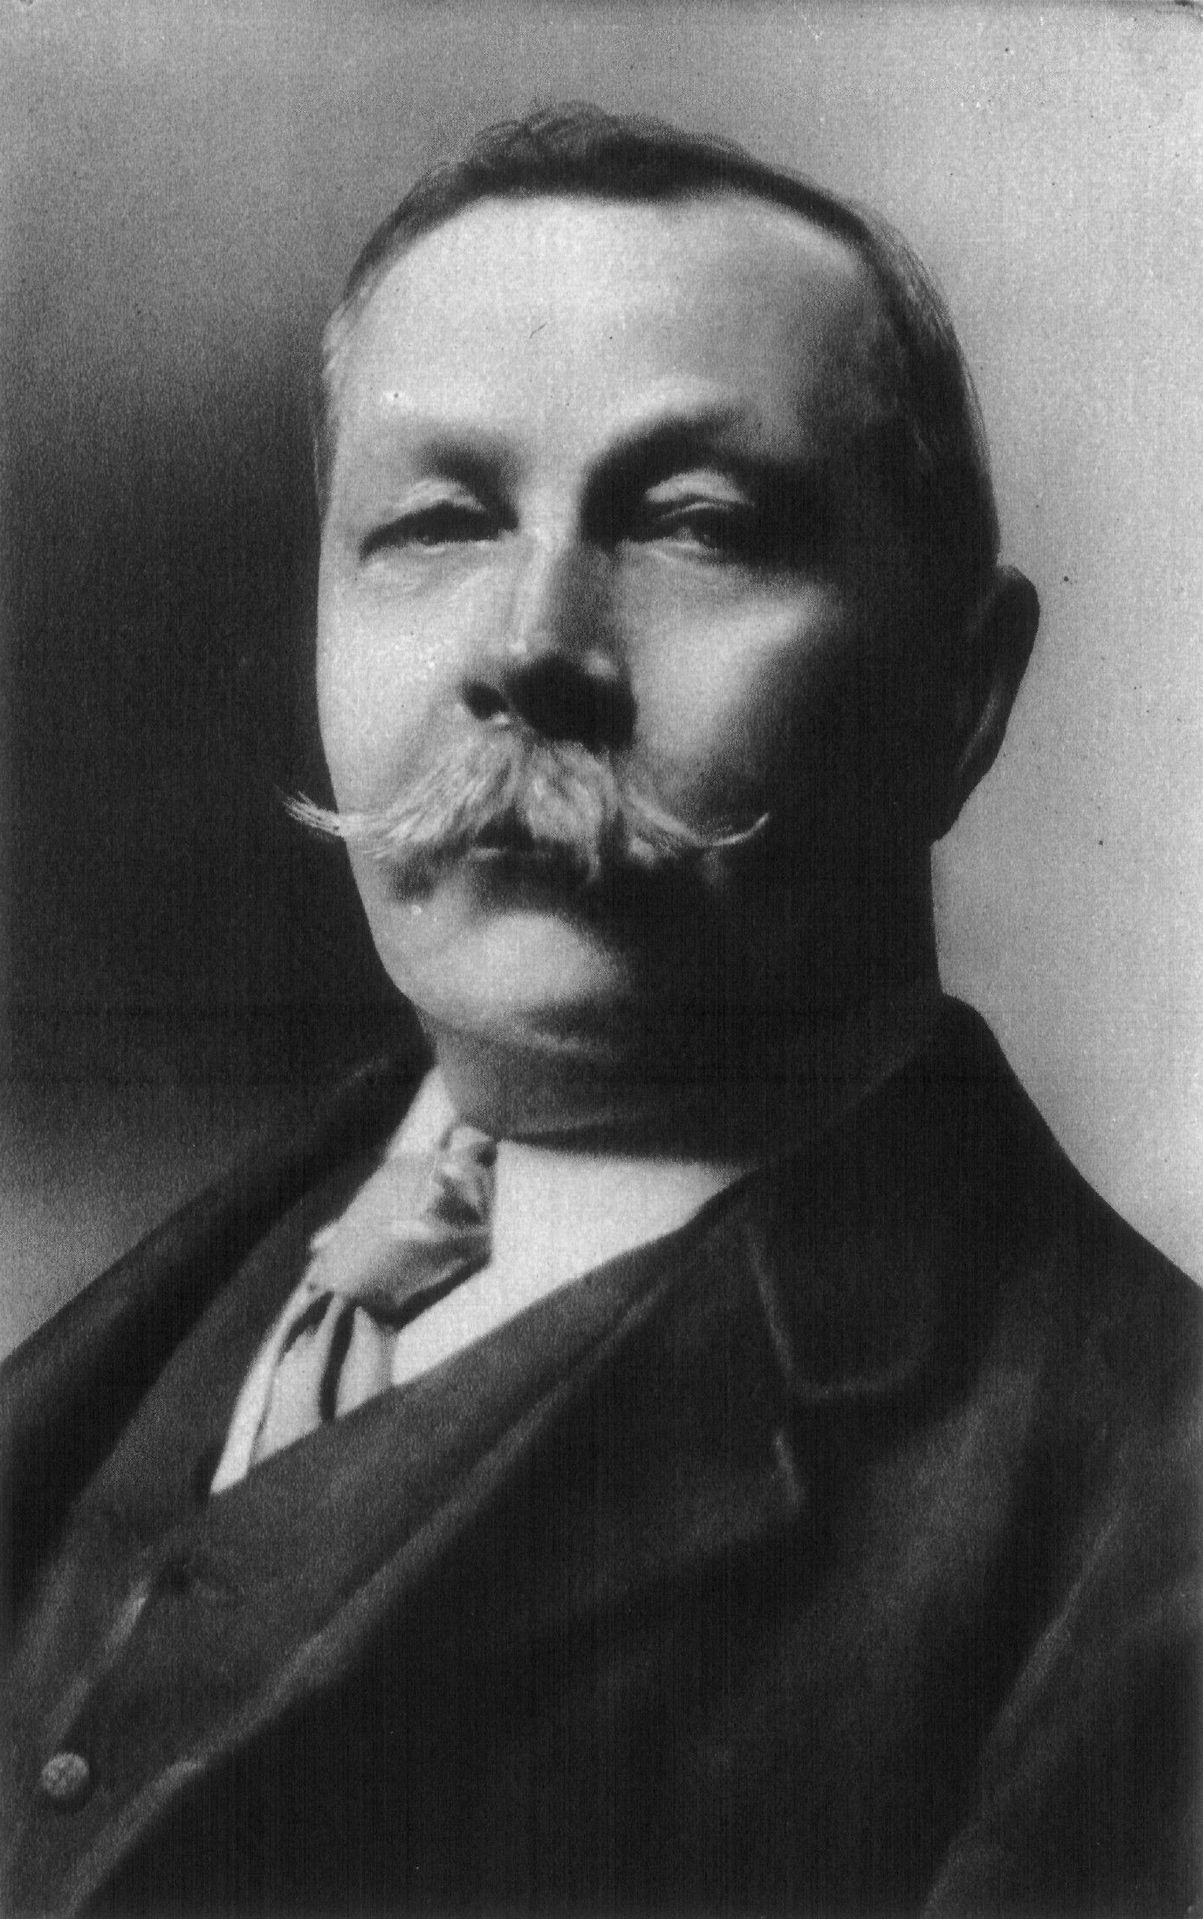 image of Arthur Conan Doyle from public domain https://en.wikipedia.org/wiki/Arthur_Conan_Doyle#/media/File:Conan_doyle.jpg